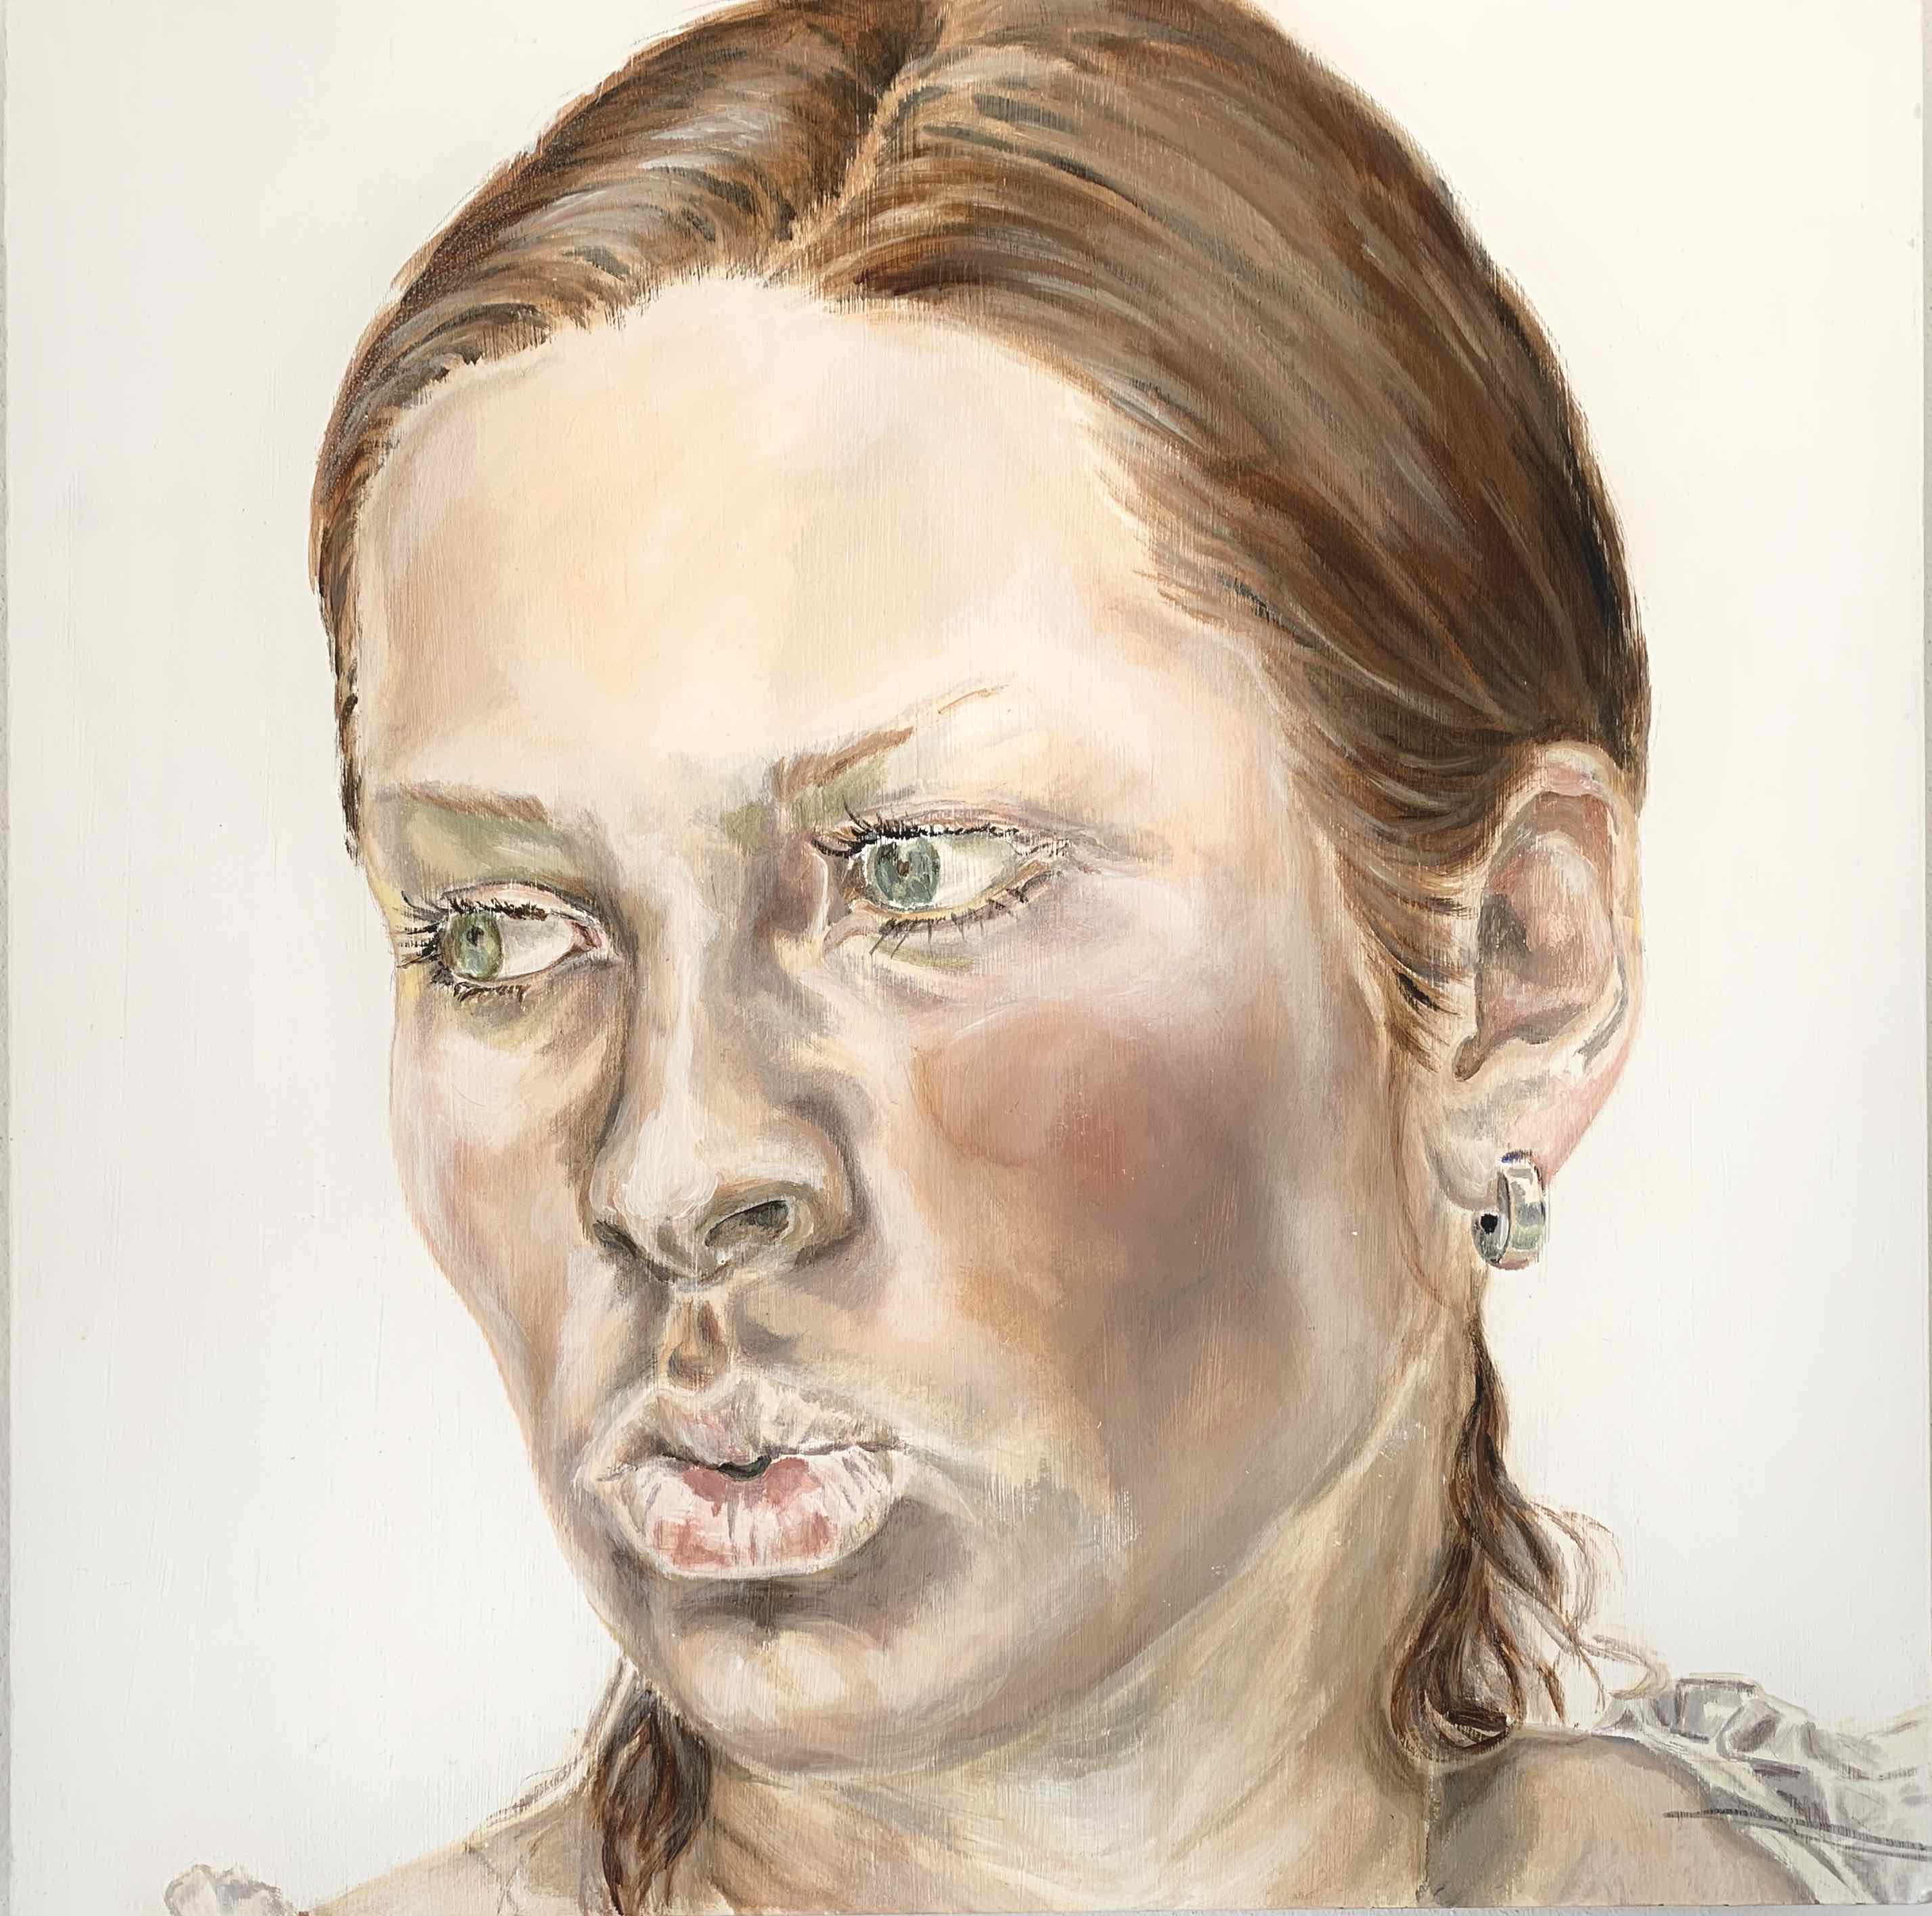 Schweiger Christine, Selbstporträt, 2004, Acrylfarbe auf MDF-Platte, 60 x 60 cm